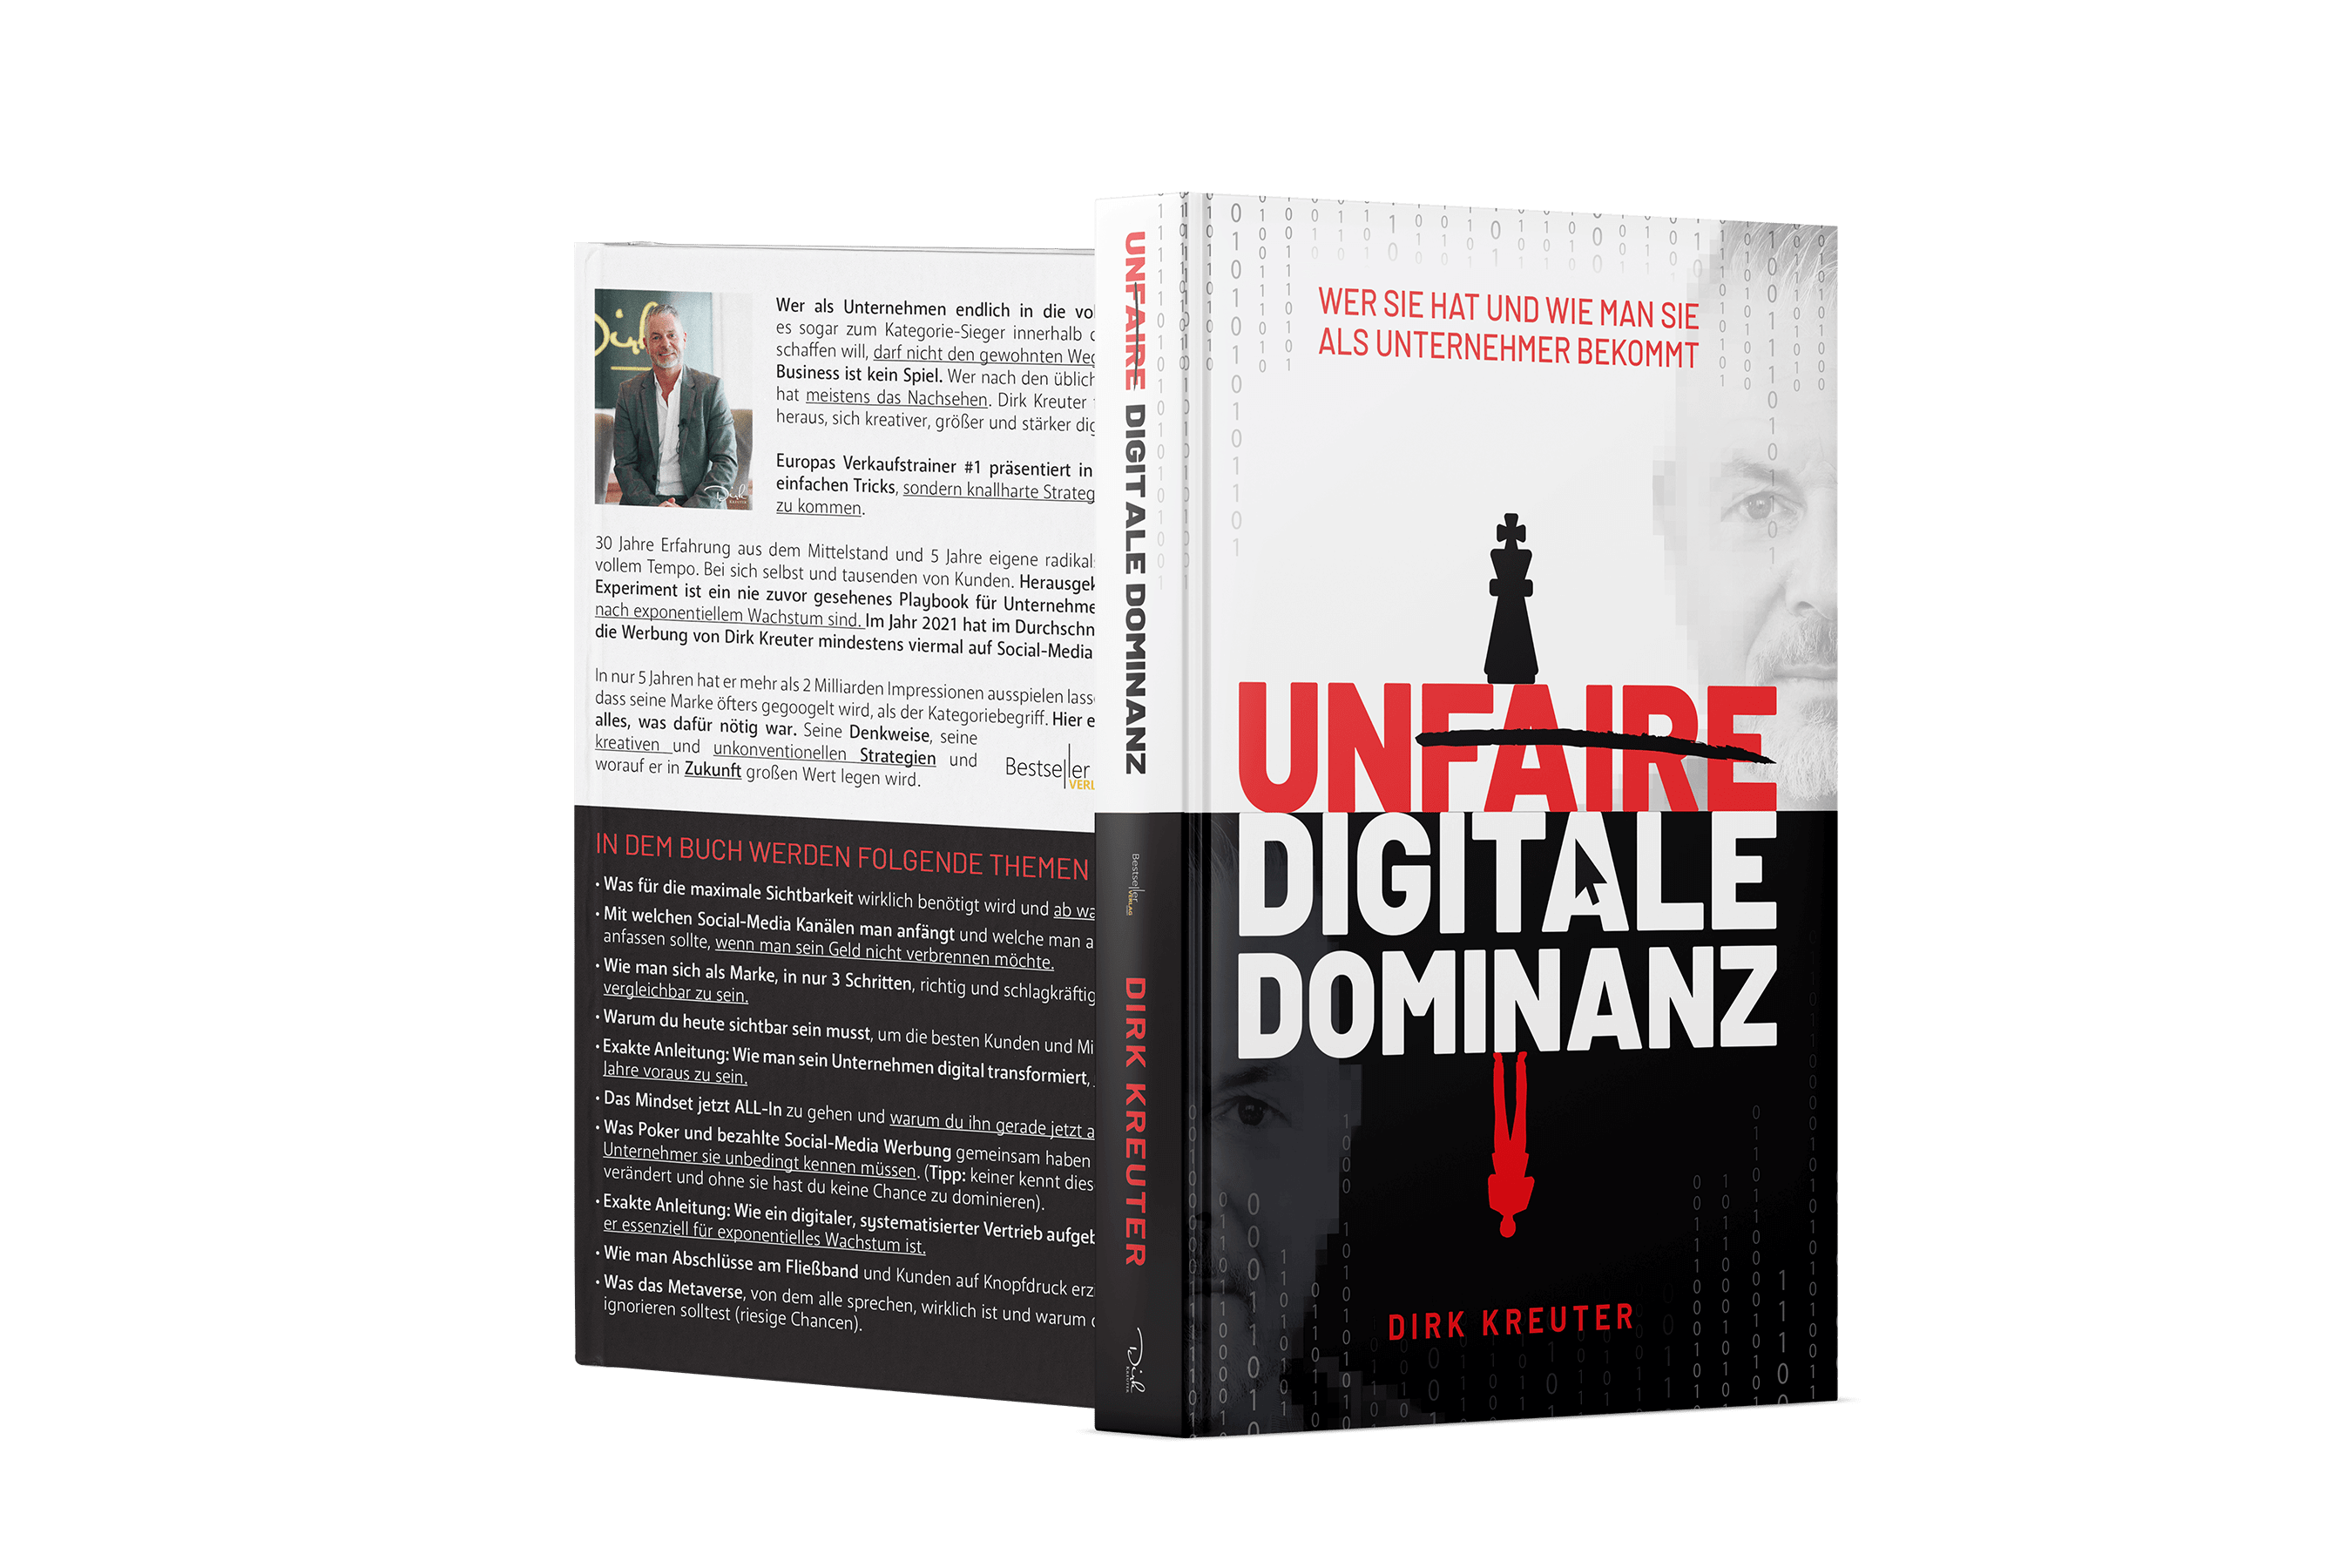 Unfaire digitale Dominanz - Buch von Dirk Kreuter 1